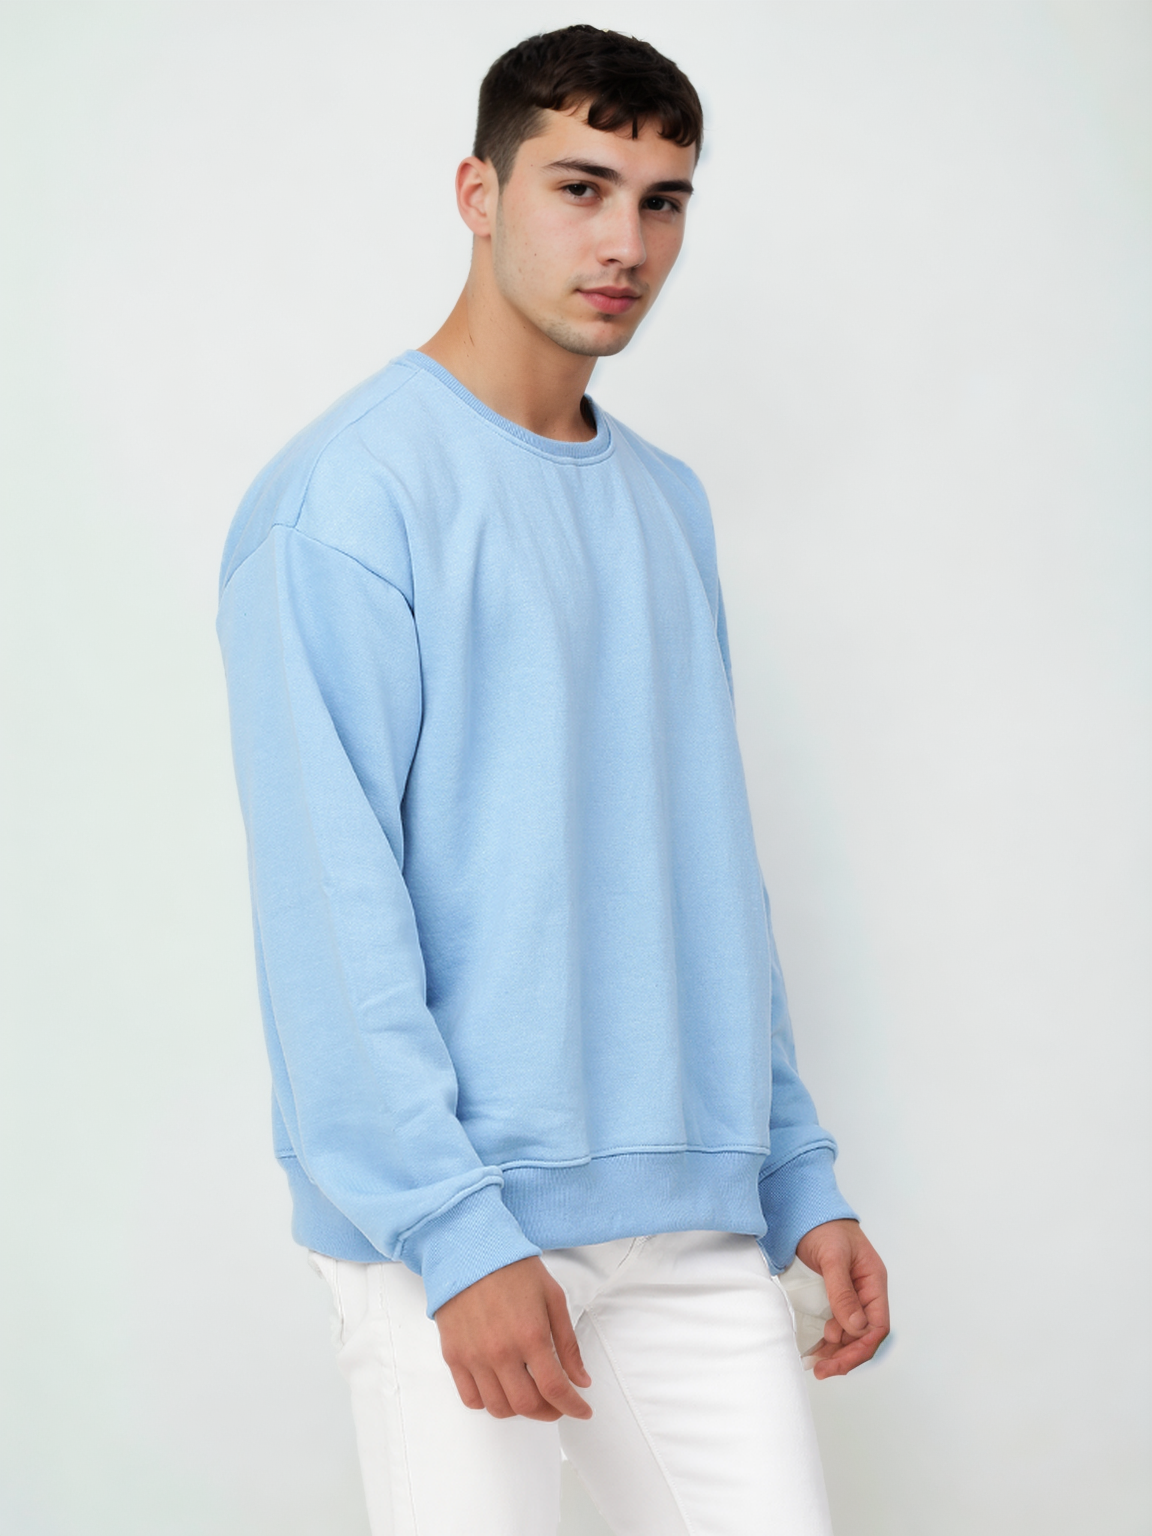 Hemsters Blue Knitted Full Sleevs Sweatshirt For Men